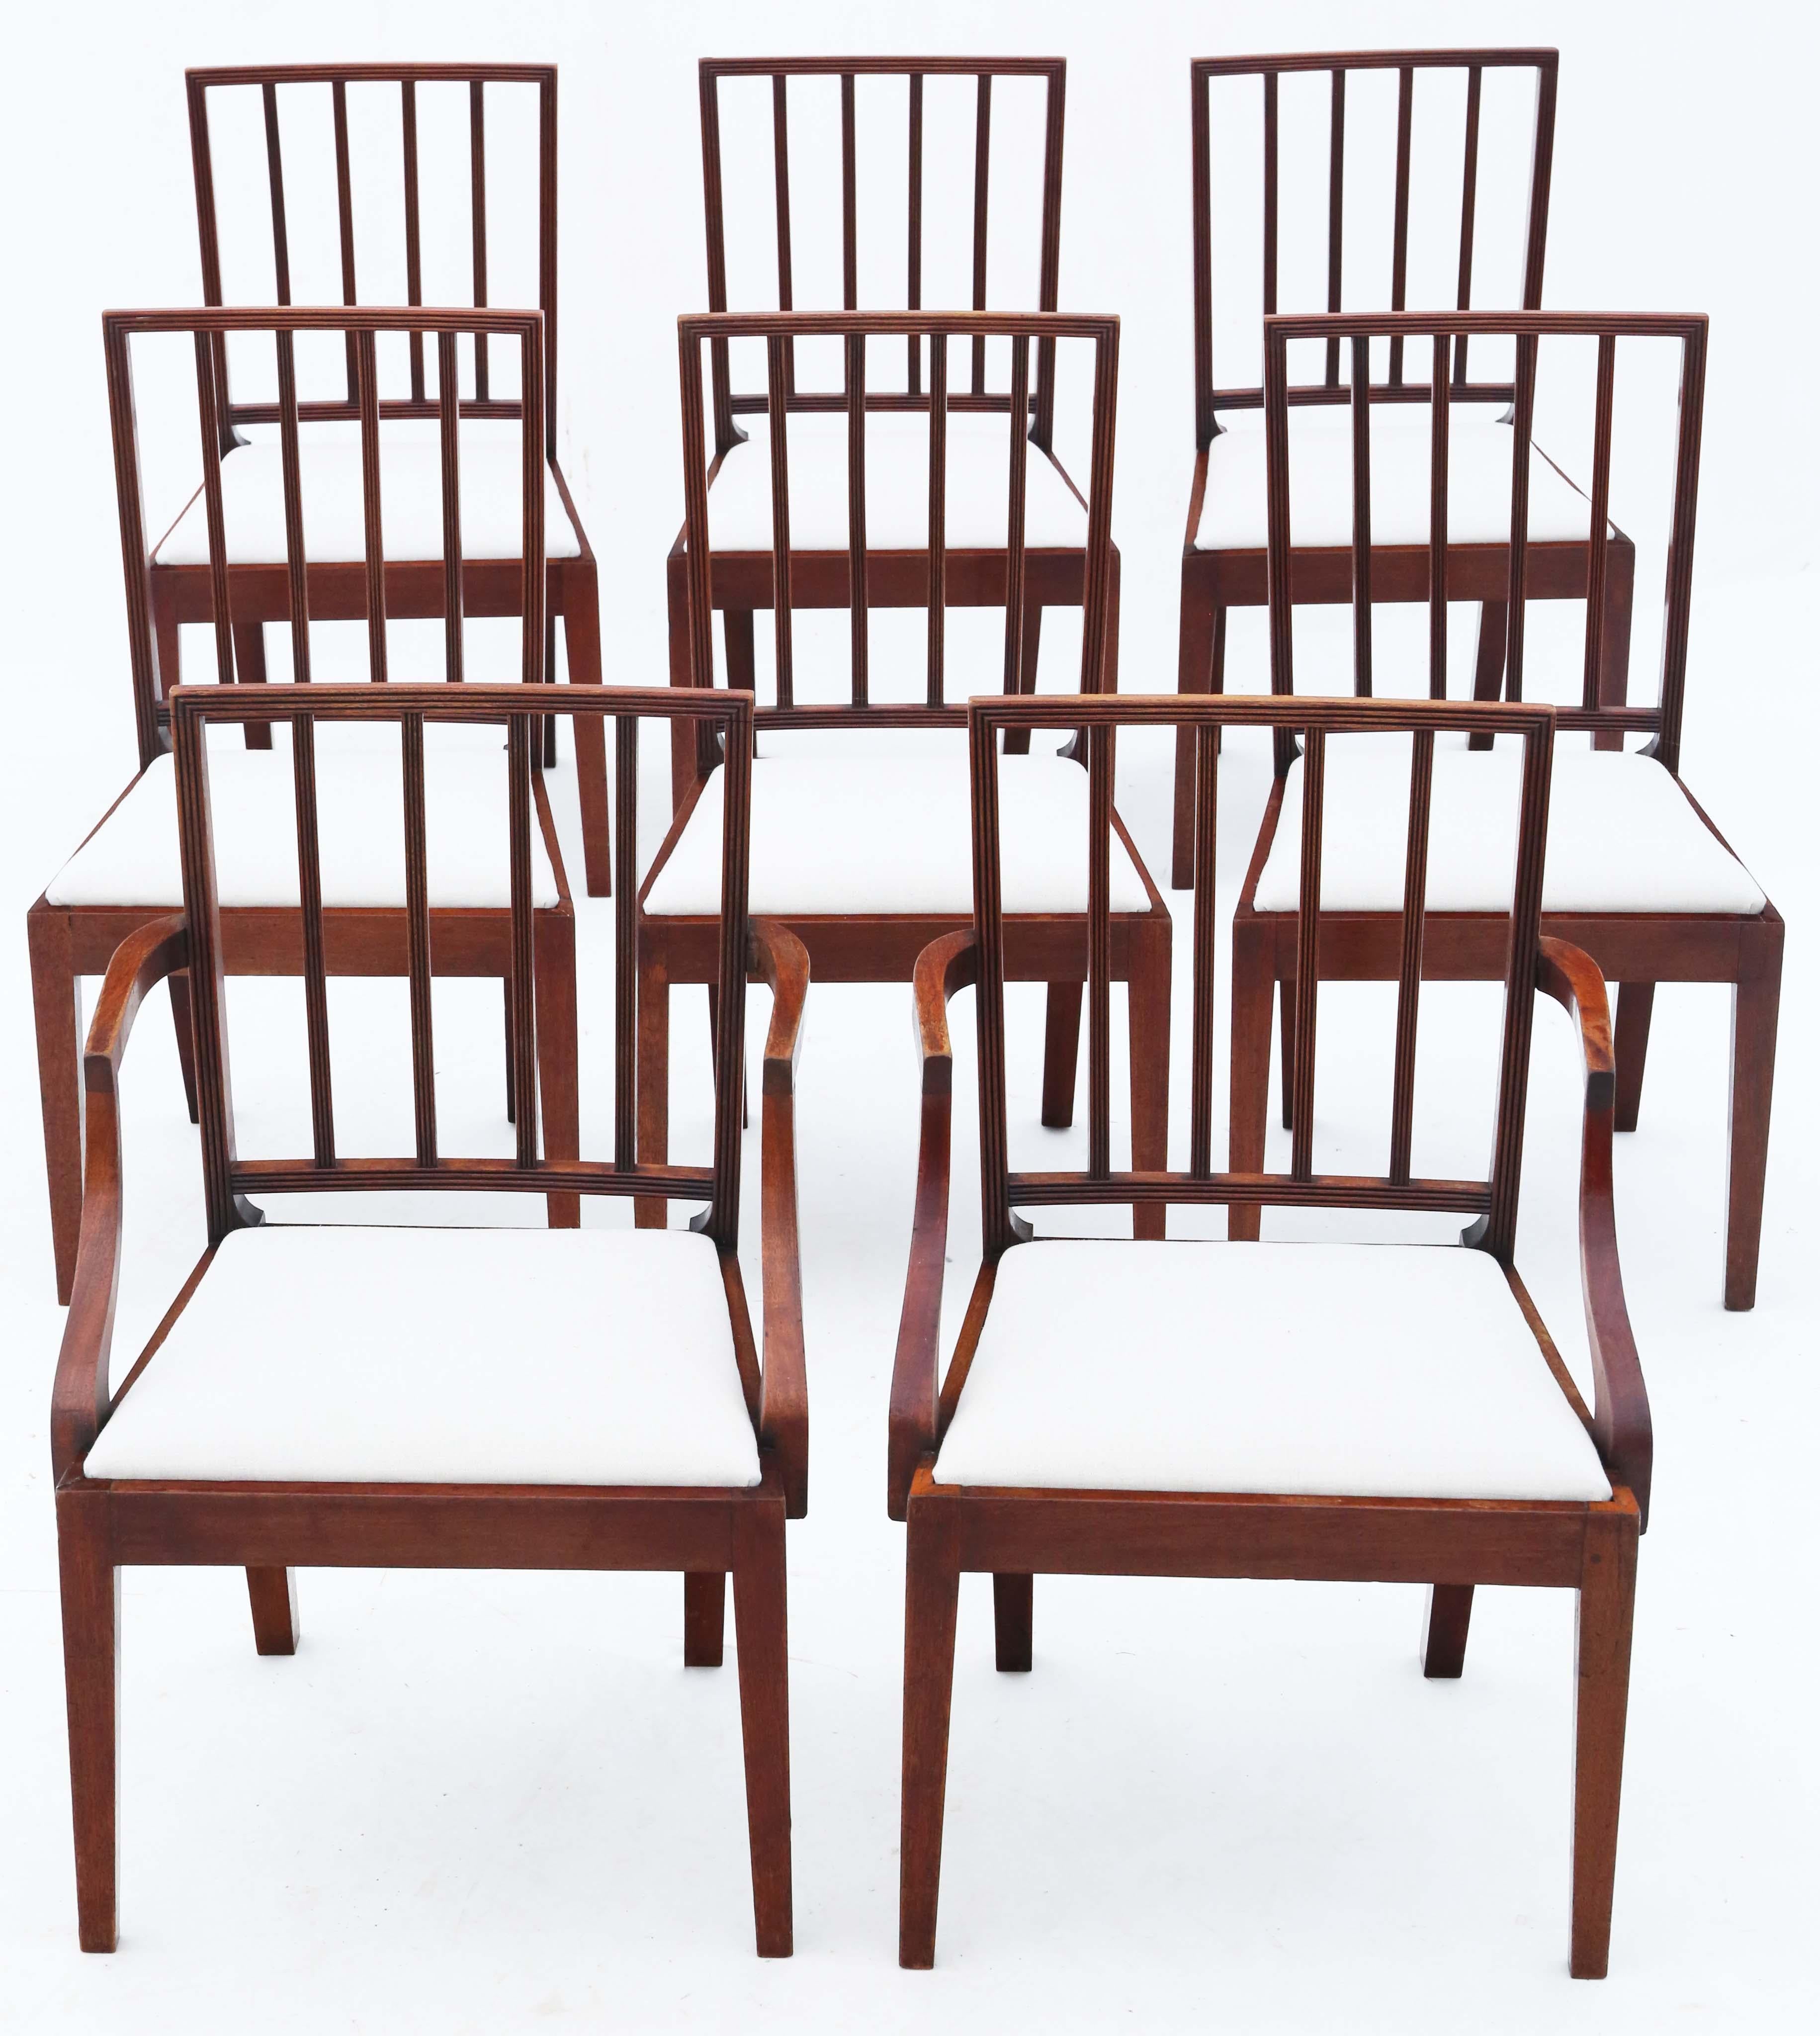 Découvrez l'élégance rare de cet ensemble exceptionnel de 8 (6 plus 2) chaises de salle à manger en acajou du début du XIXe siècle, datant d'environ 1820. Ces chaises présentent un design simple mais élégant qui incarne la sophistication de